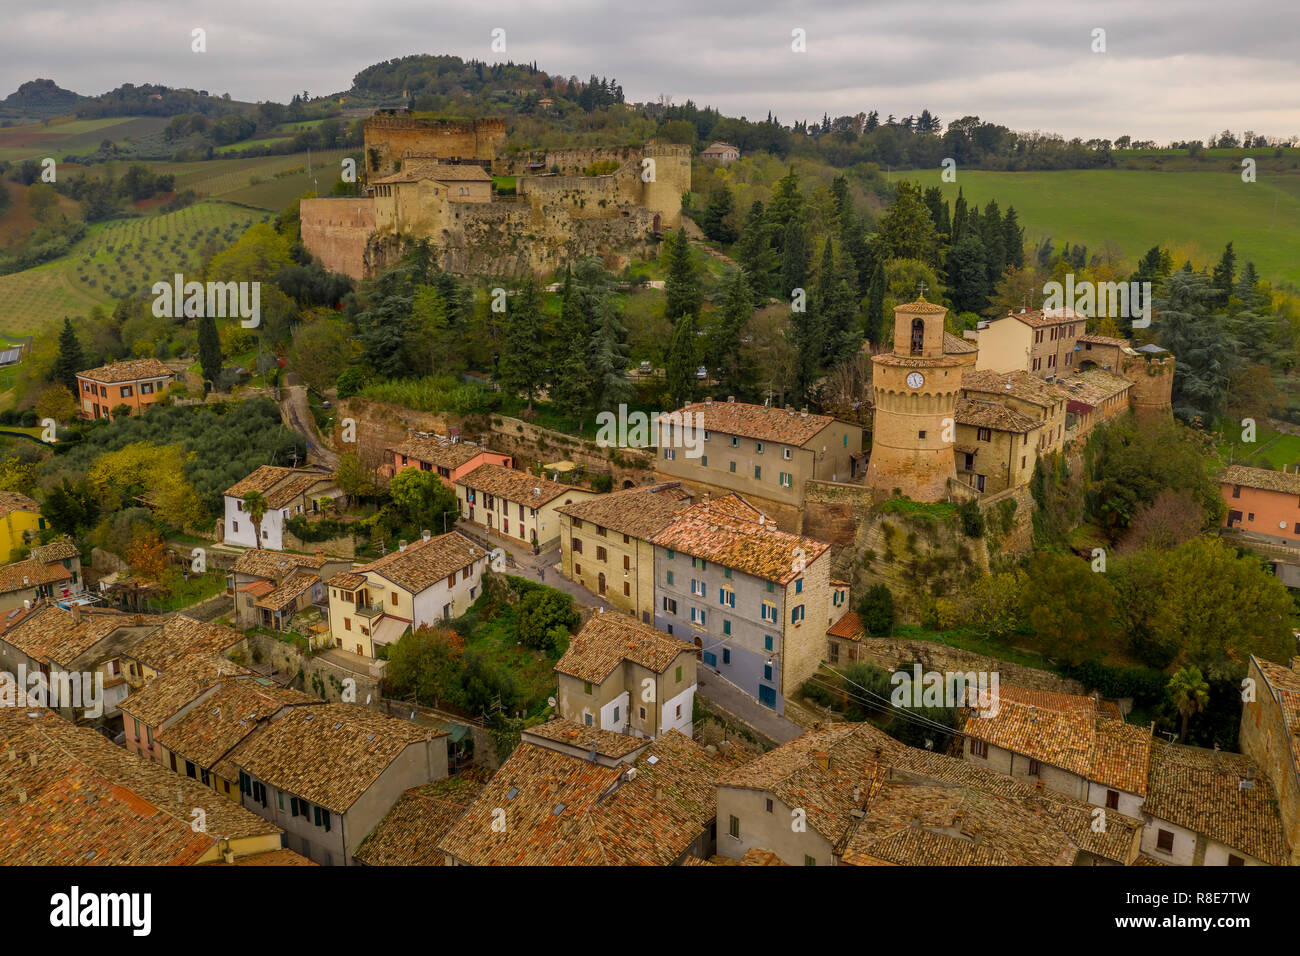 Vista aérea de la ciudad termal, castillo medival gótica fortezza y coloridas casas de Castrocaro Terme, en la provincia de Forli Cesena, Emilia Romagna, Italia Foto de stock